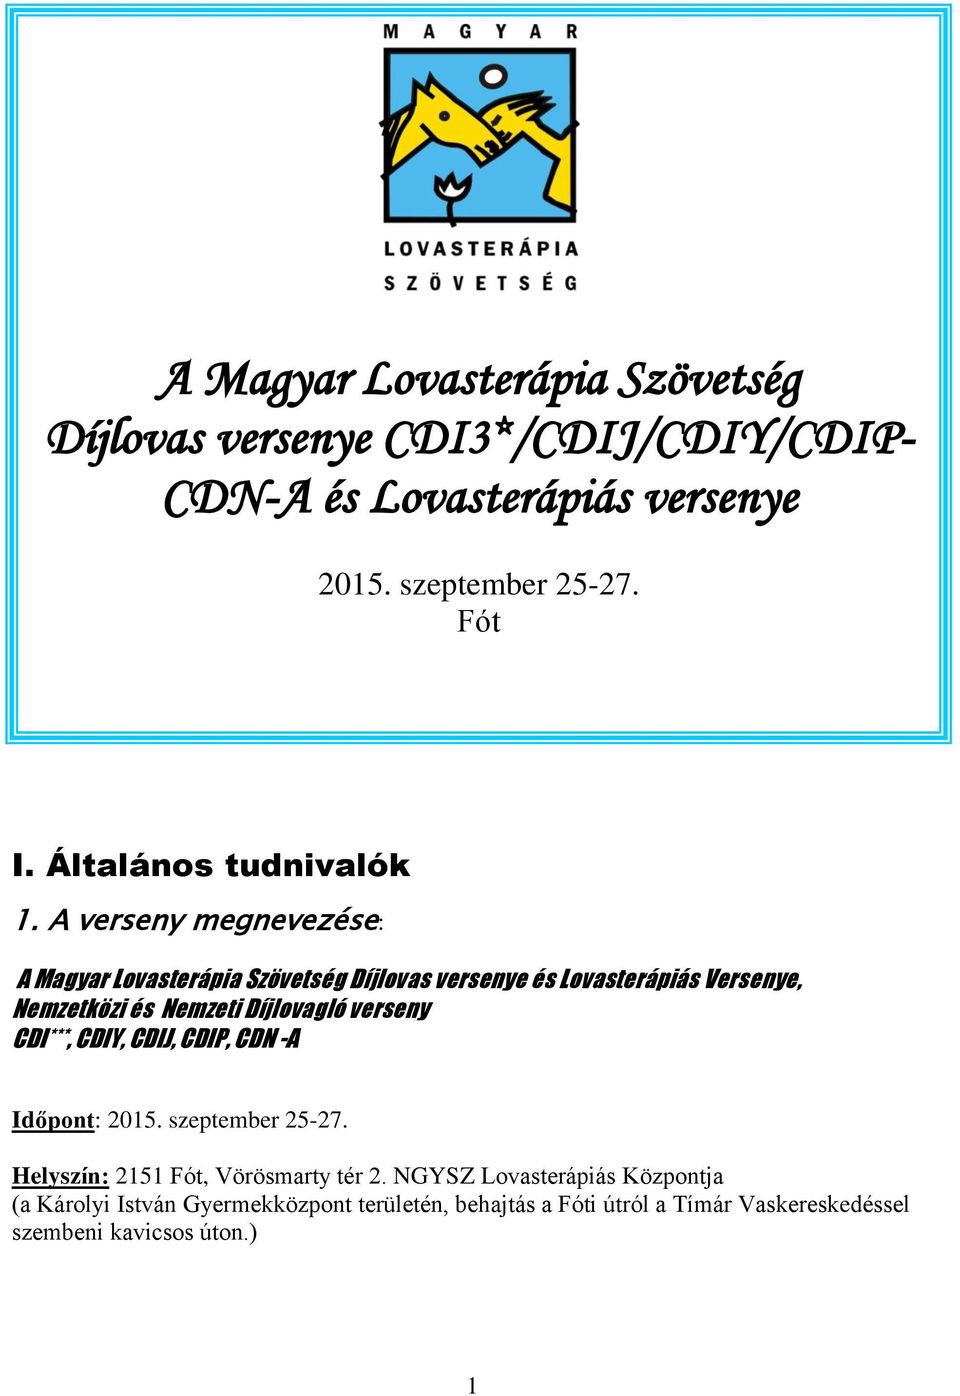 A verseny megnevezése: Versenykiírás A Magyar Lovasterápia Szövetség Díjlovas versenye és Lovasterápiás Versenye, Nemzetközi és Nemzeti